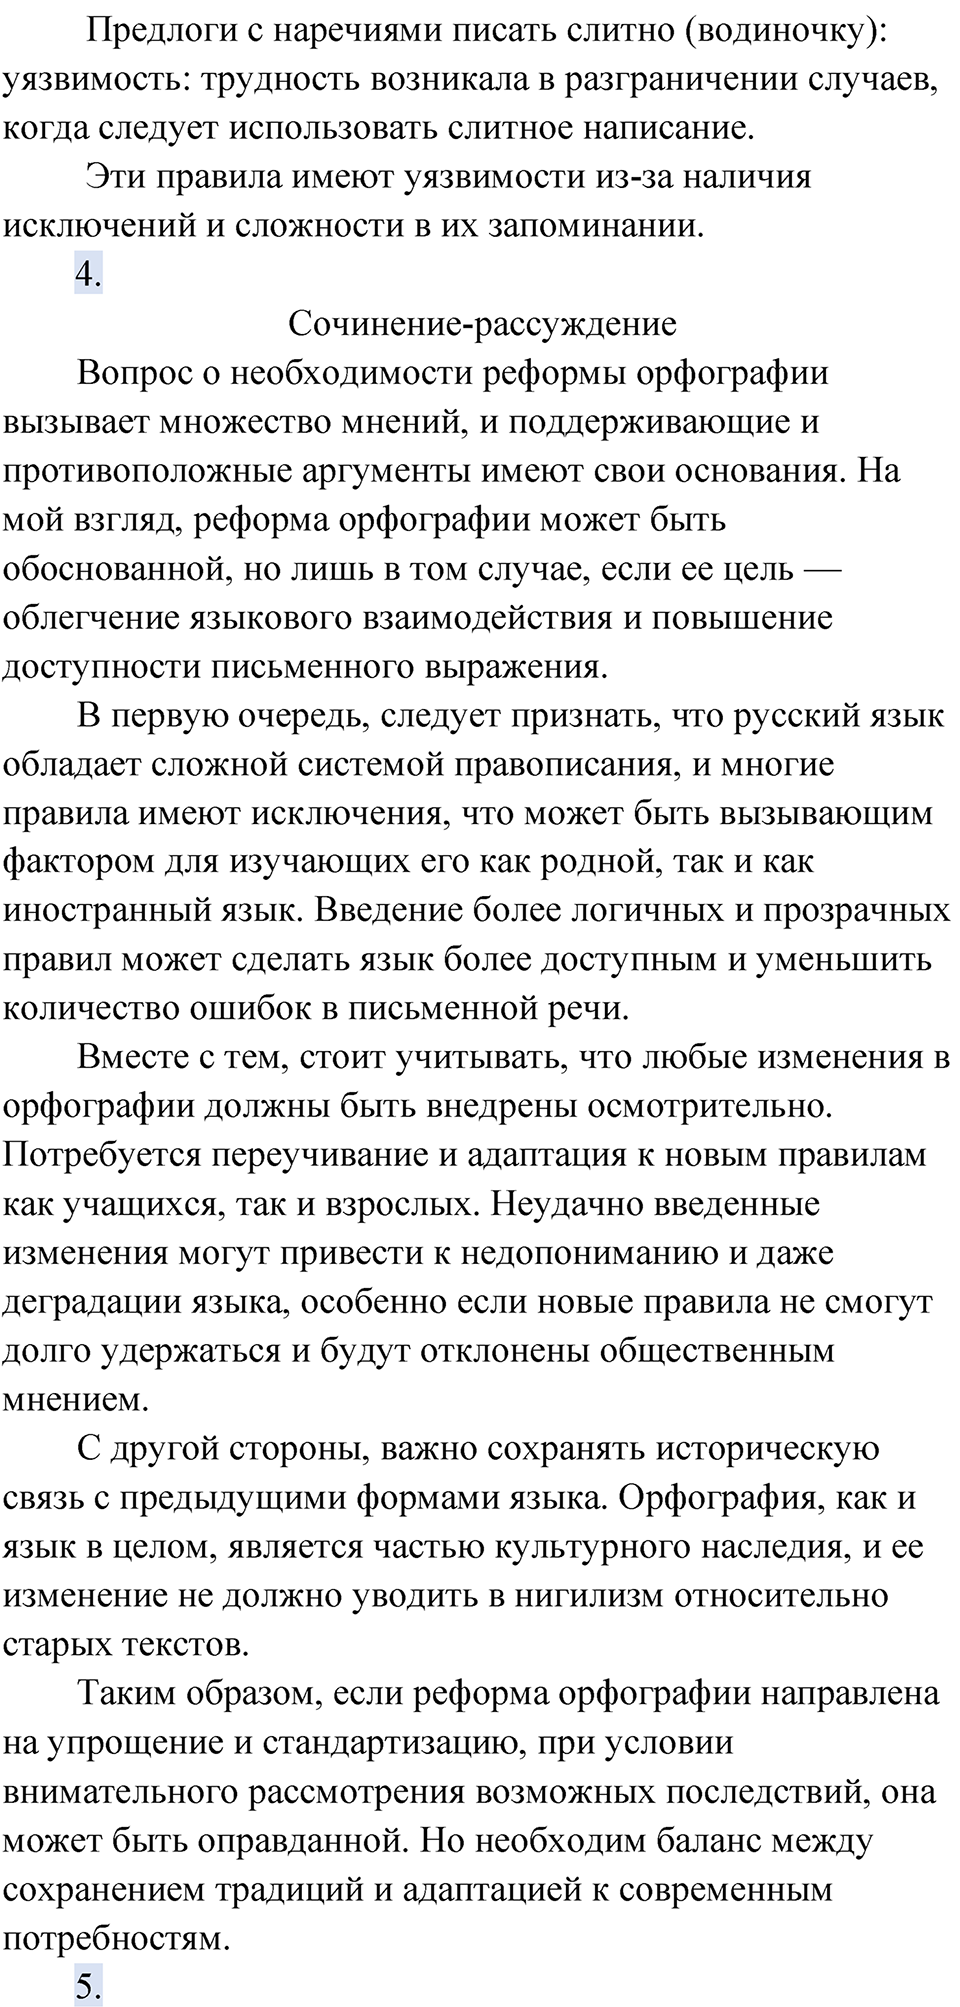 страница 82 упражнение 62 русский язык 9 класс Быстрова 2 часть 2022 год